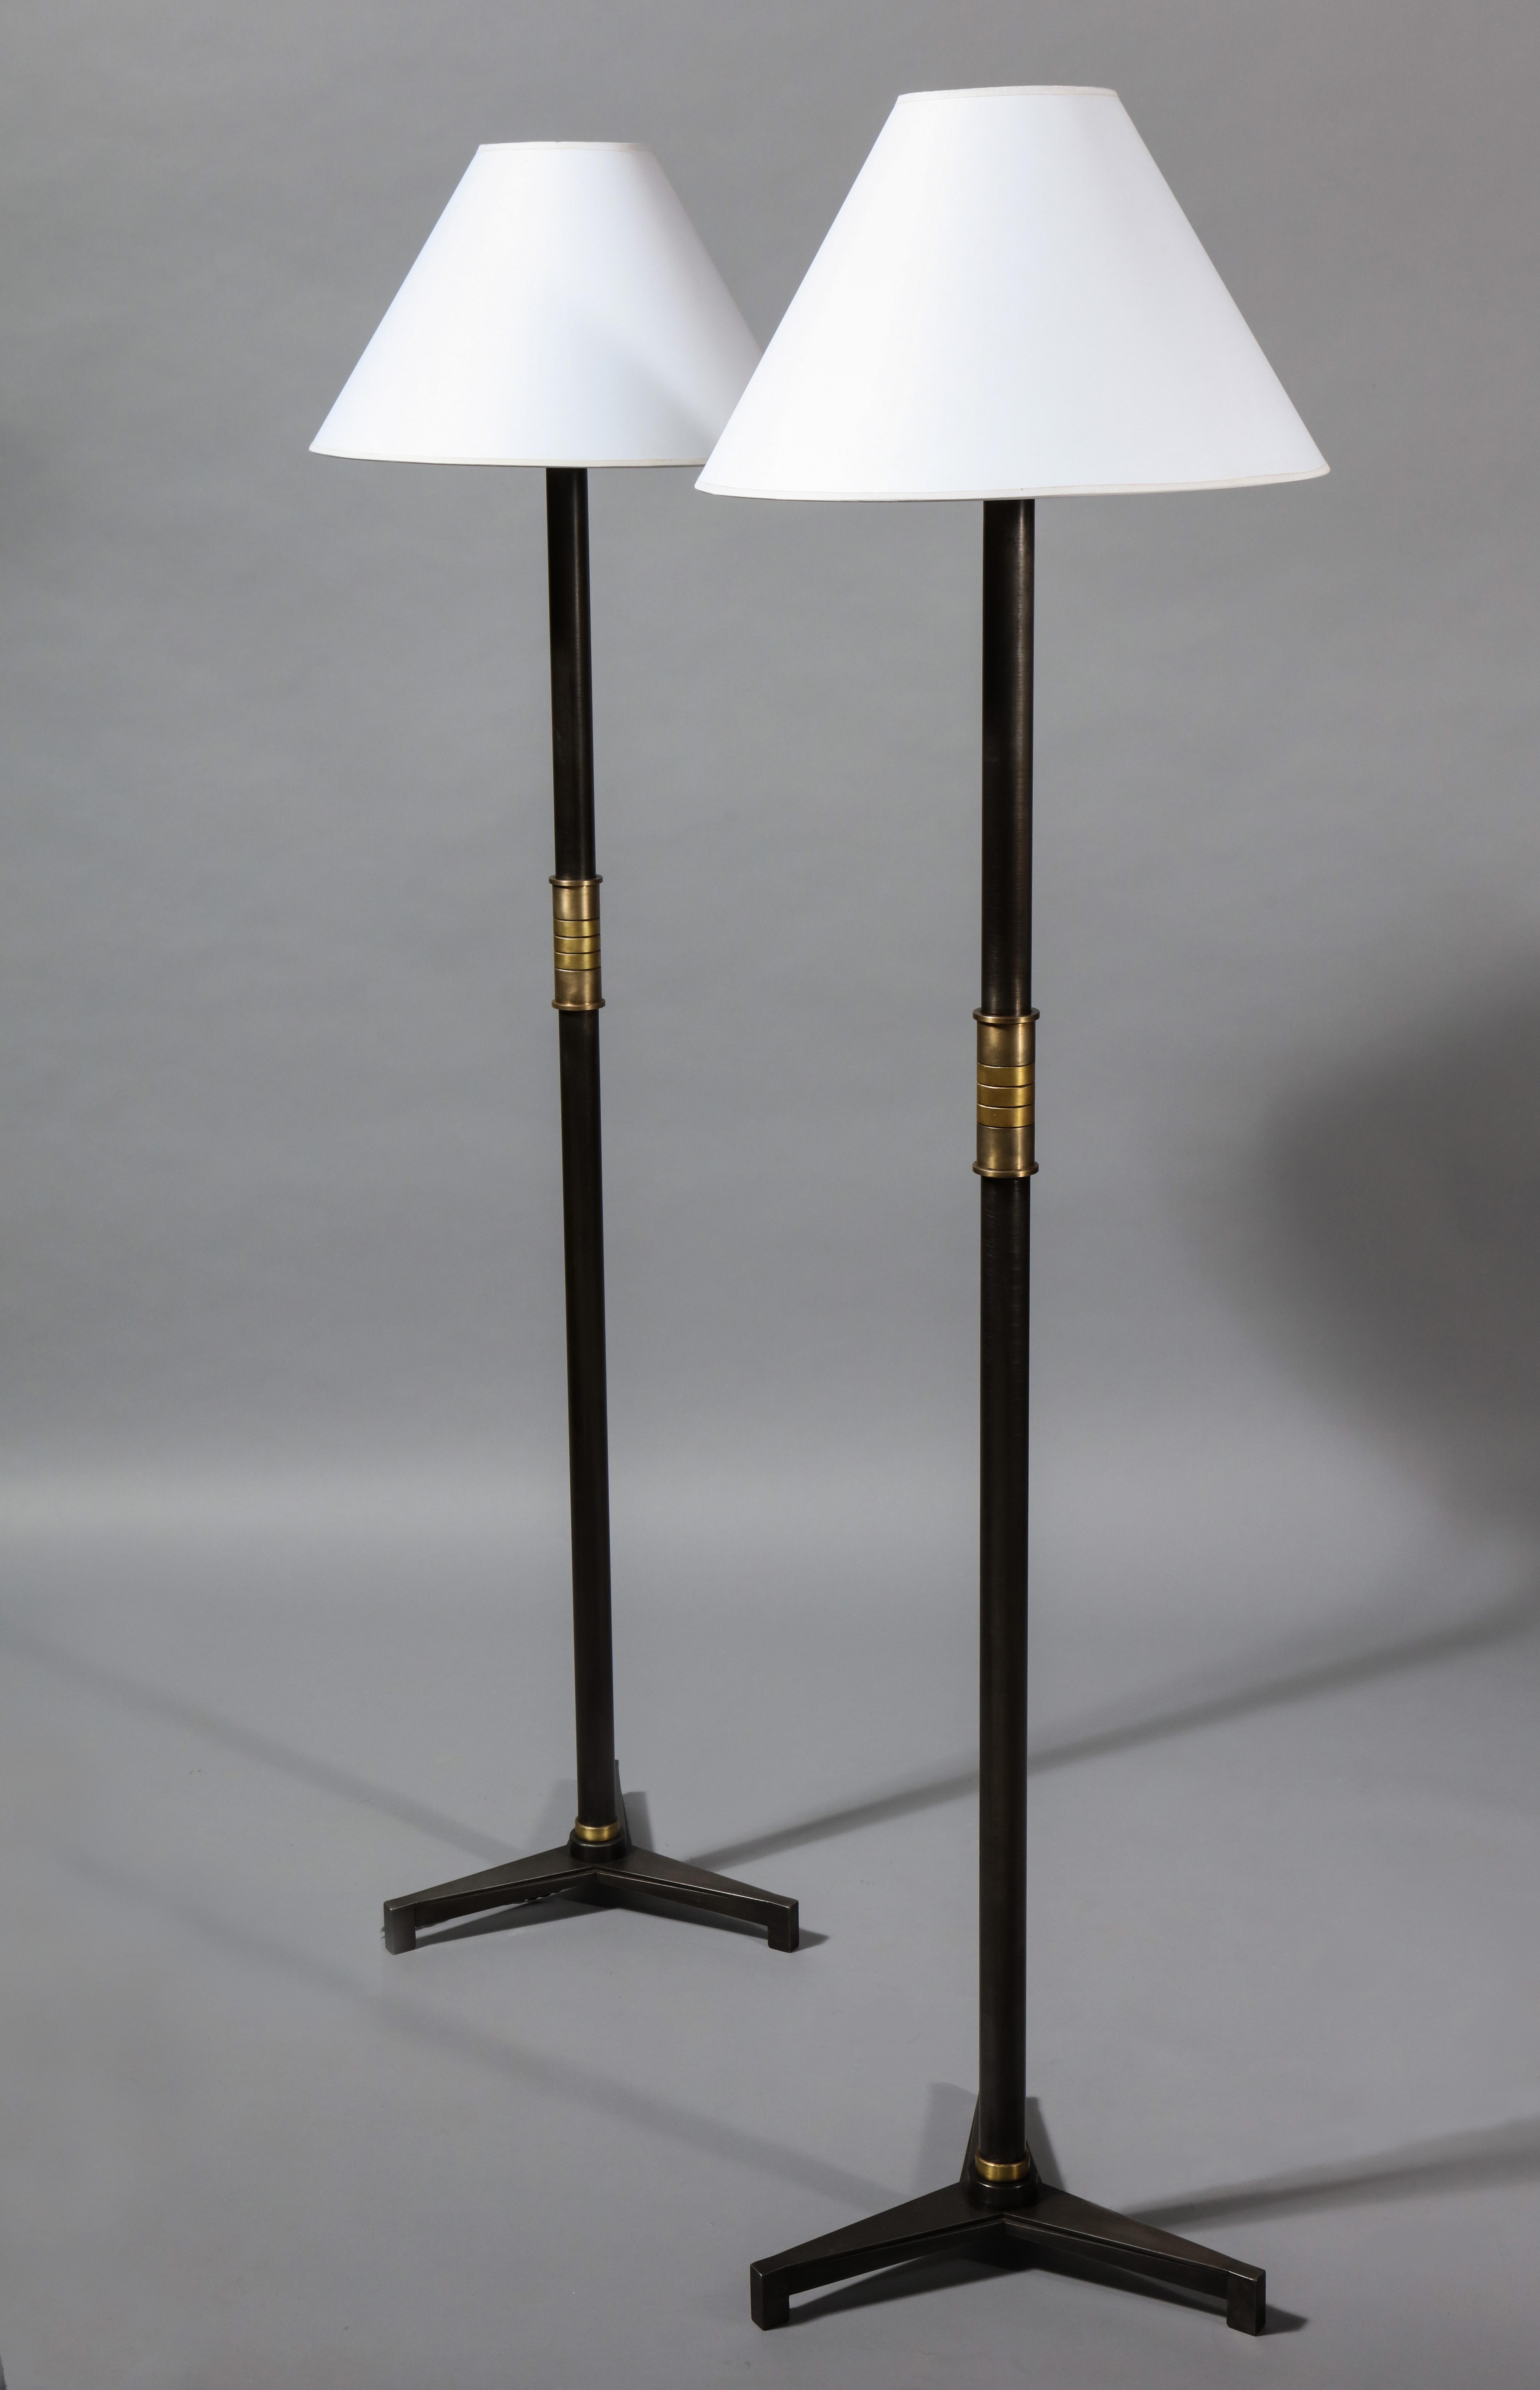 Eine Stehlampe mit dreifüßigem Sockel mit konischer Riffelung, die an die Art-Déco-Bewegung erinnert. Der Griff besteht aus einer Reihe von subtil kontrastierenden Messing- und Bronzebändern. Dieses Design ist auch von der französischen Neoklassik